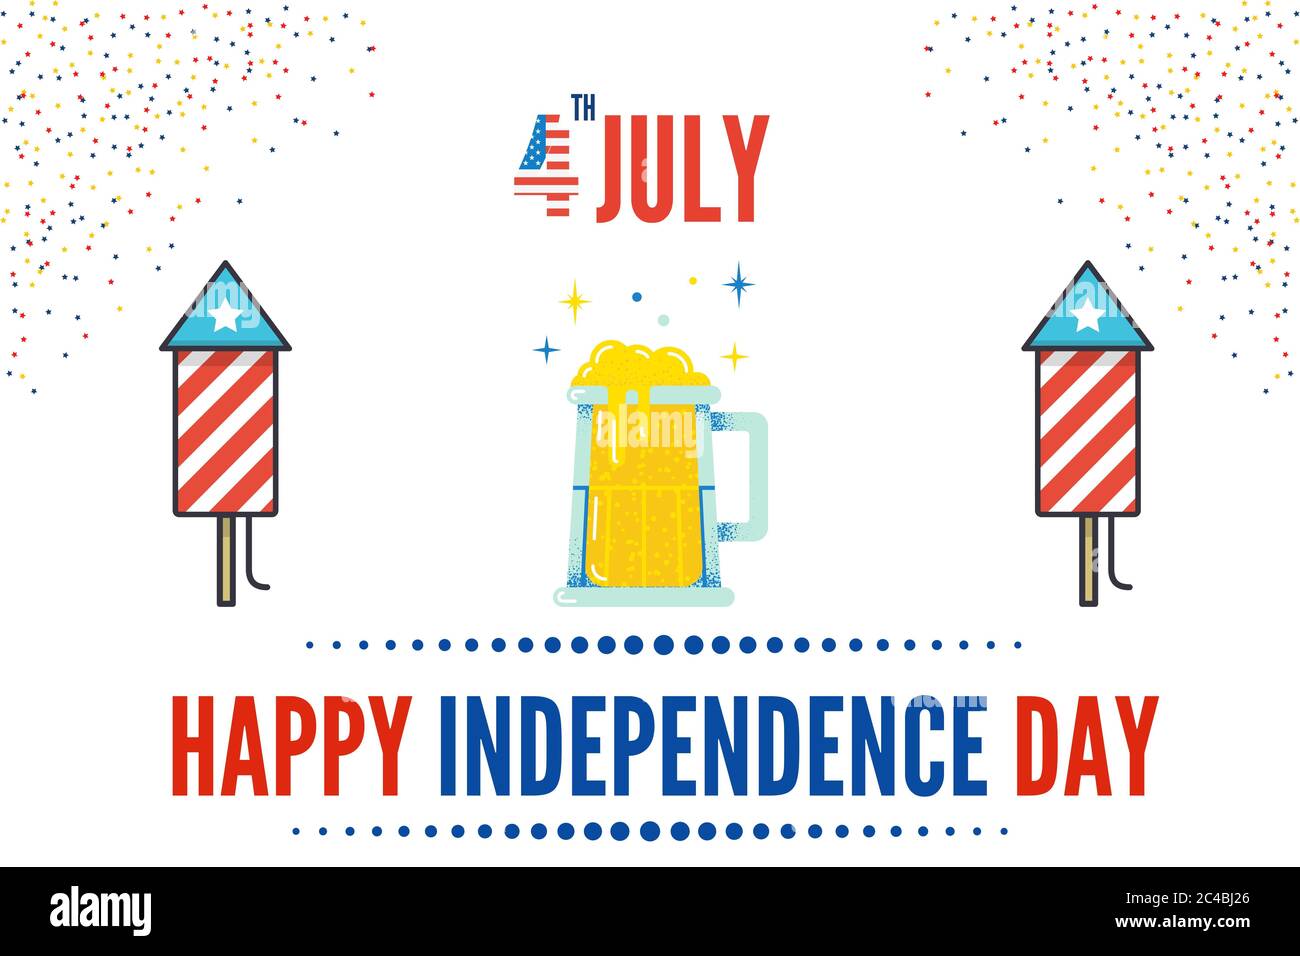 Illustration du 4 juillet Journée de l'indépendance des États-Unis d'Amérique (USA). Cette journée est célébrée comme la naissance de l'indépendance américaine Banque D'Images